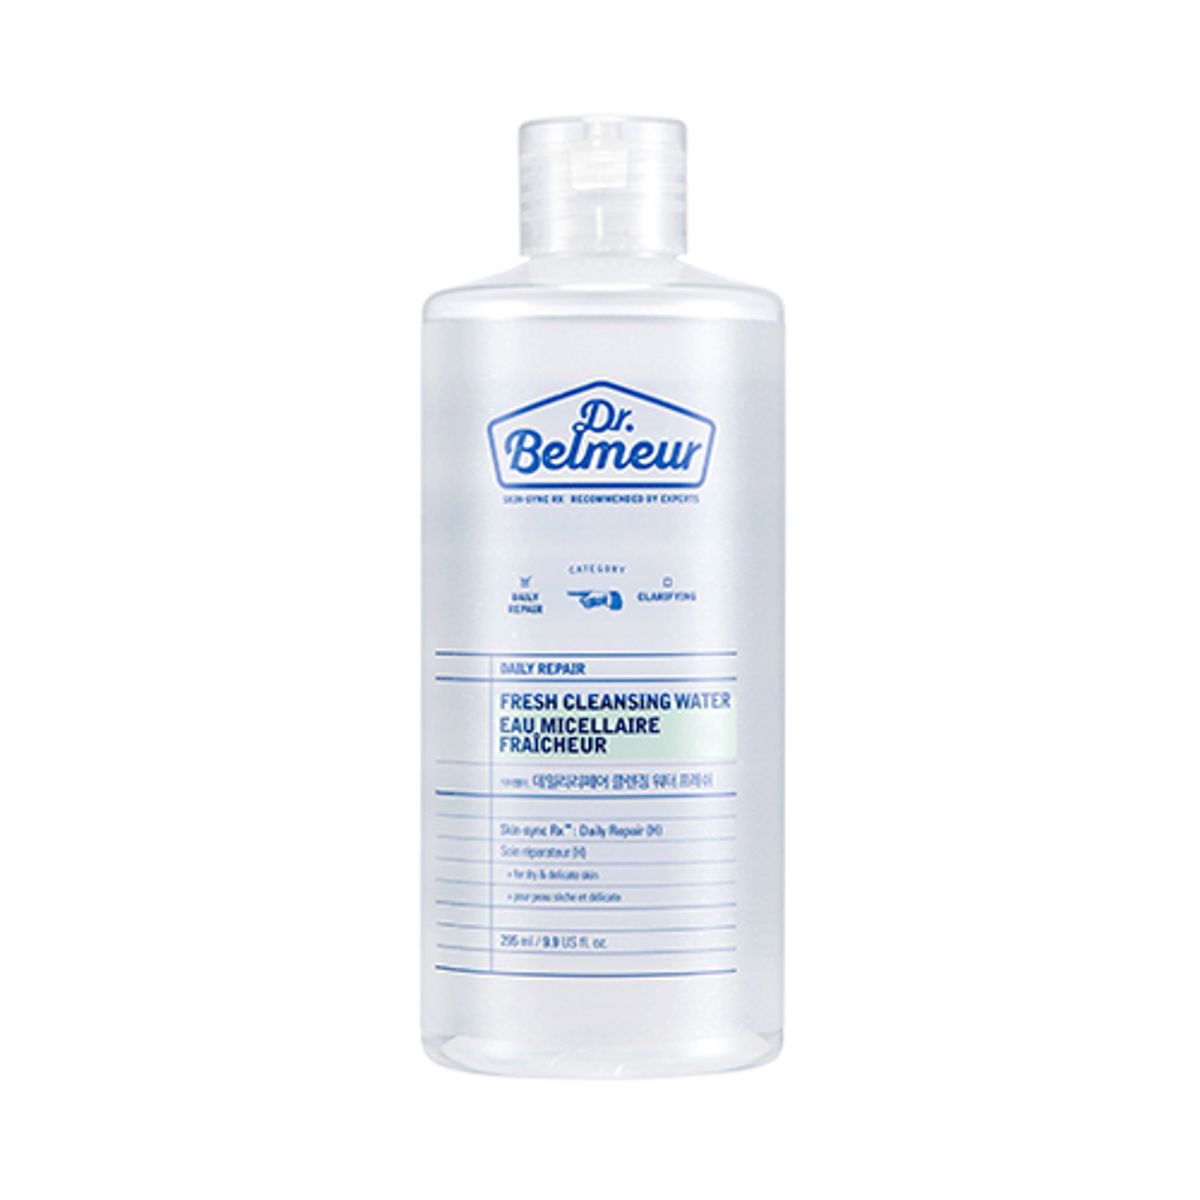 nuoc-tay-trang-dr-belmeur-daily-repair-fresh-cleansing-water-1